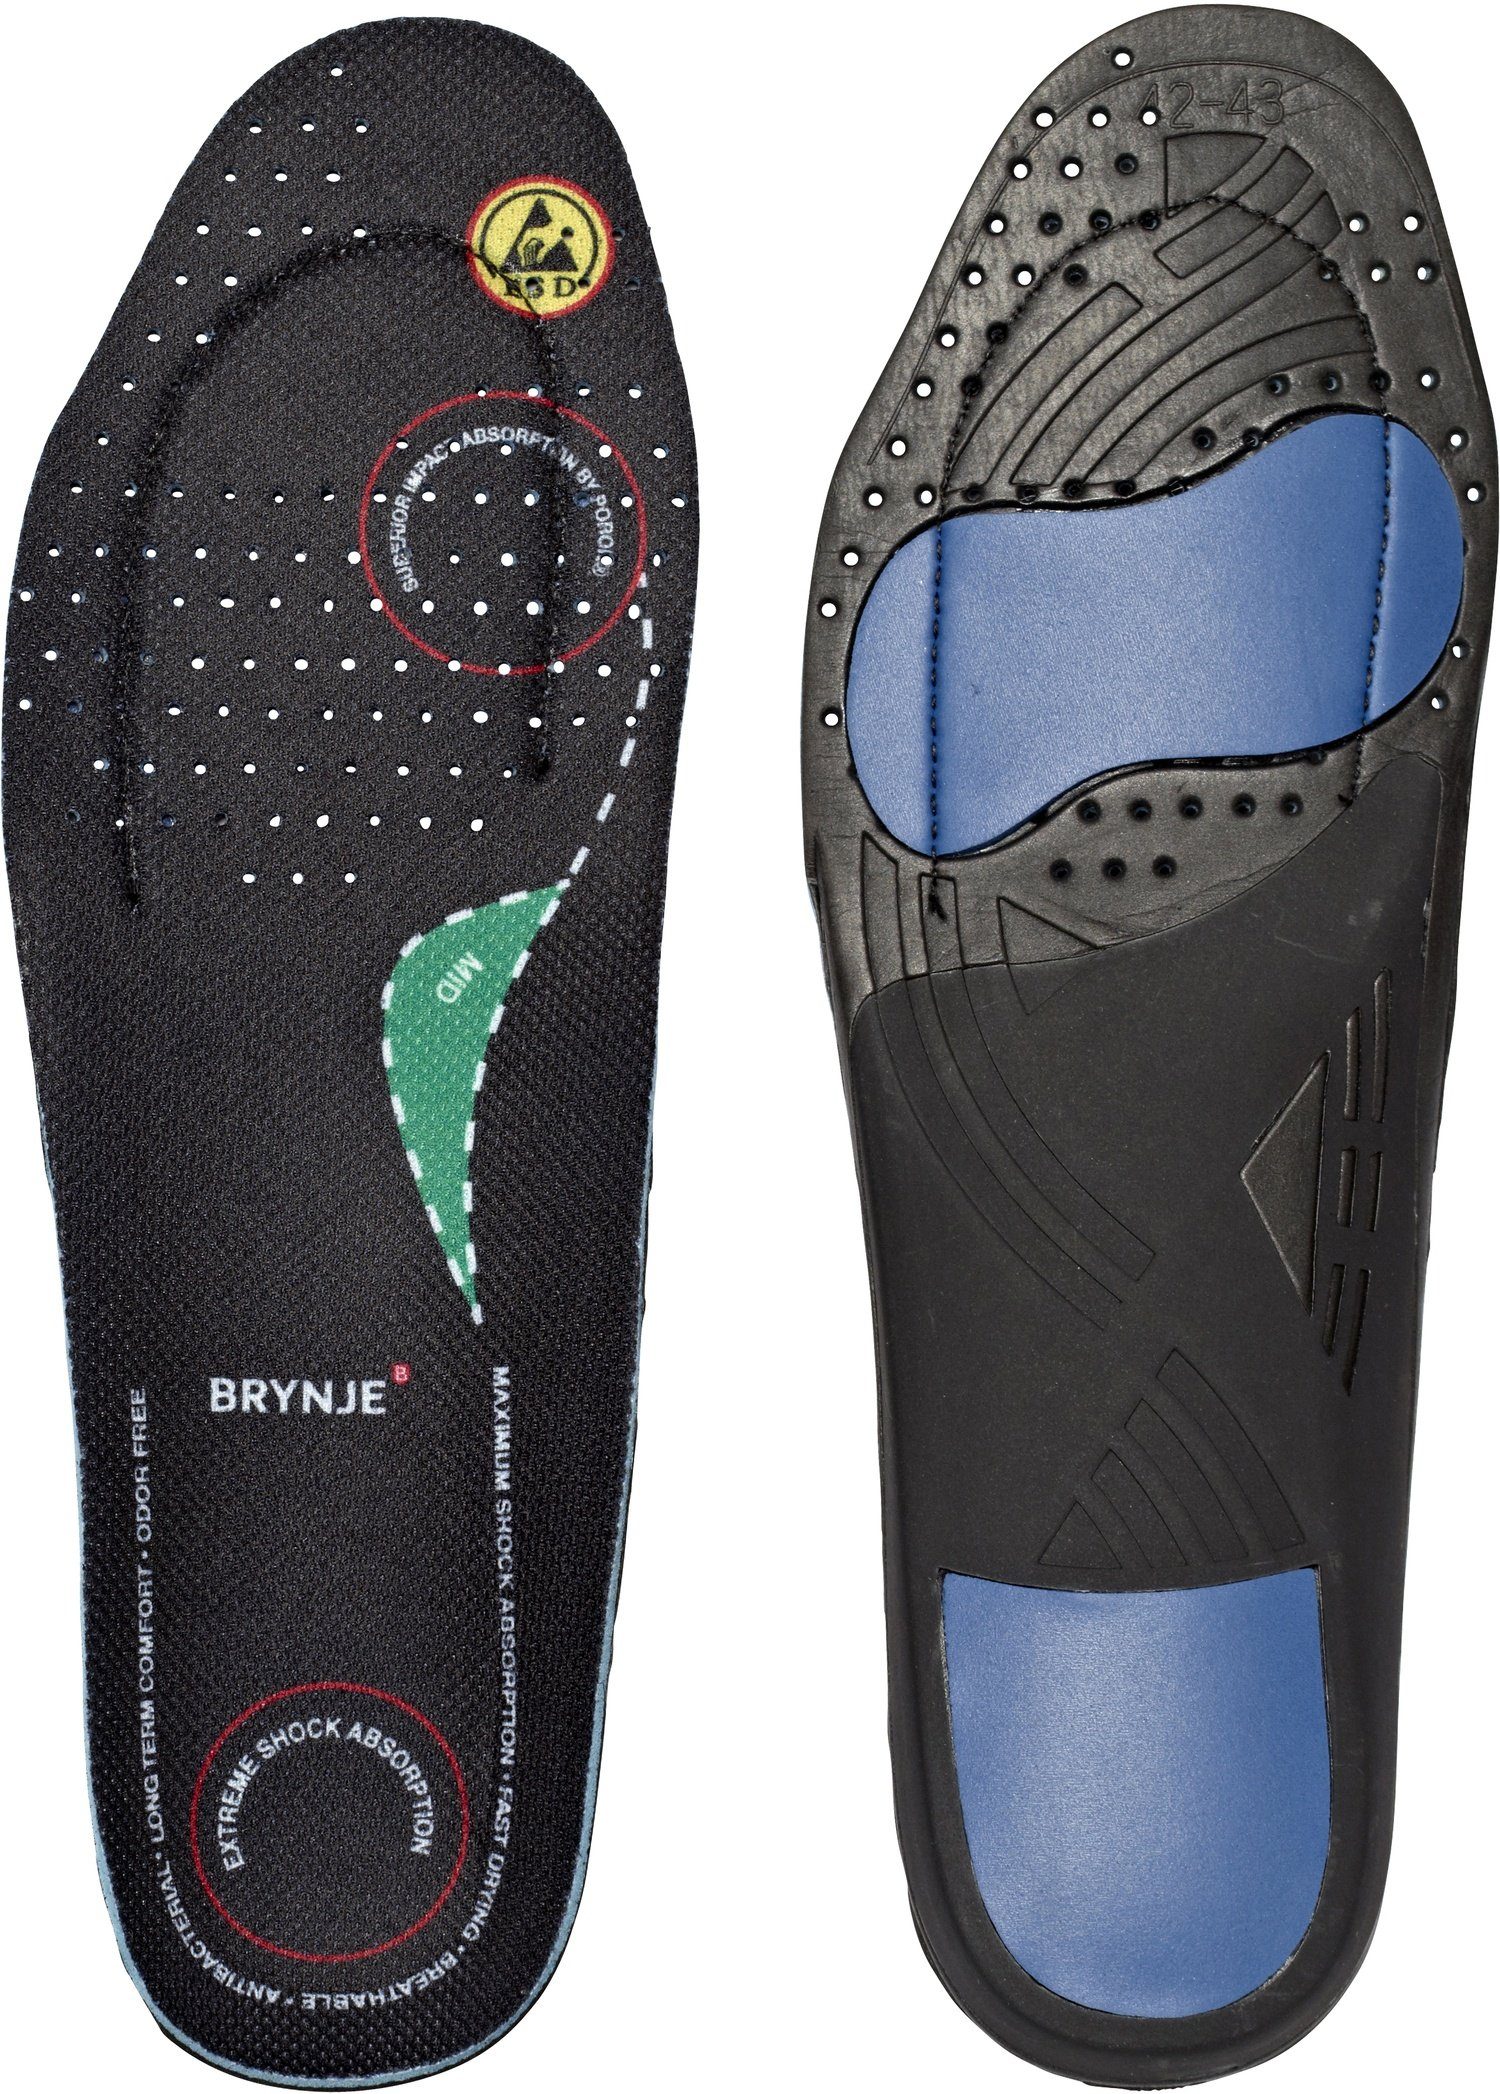 Brynje Einlegesohlen Ultimate FootFitedium, für optimale Unterstützung und Komfort